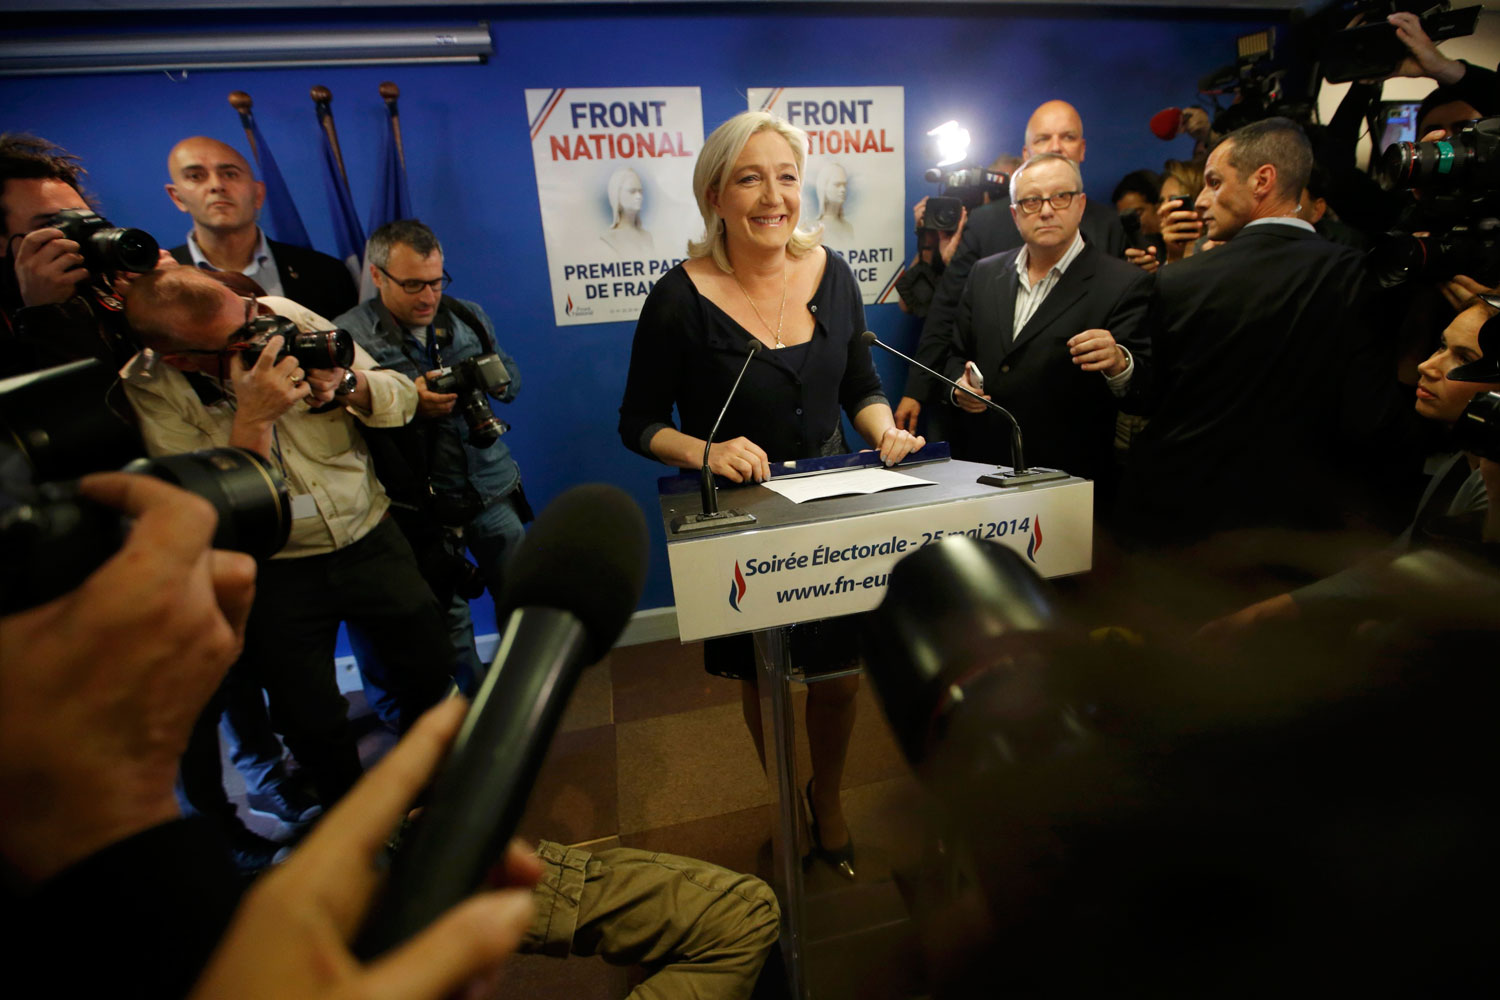 El Frente Nacional de Marine Le Pen, vencedor en las elecciones europeas de Francia.